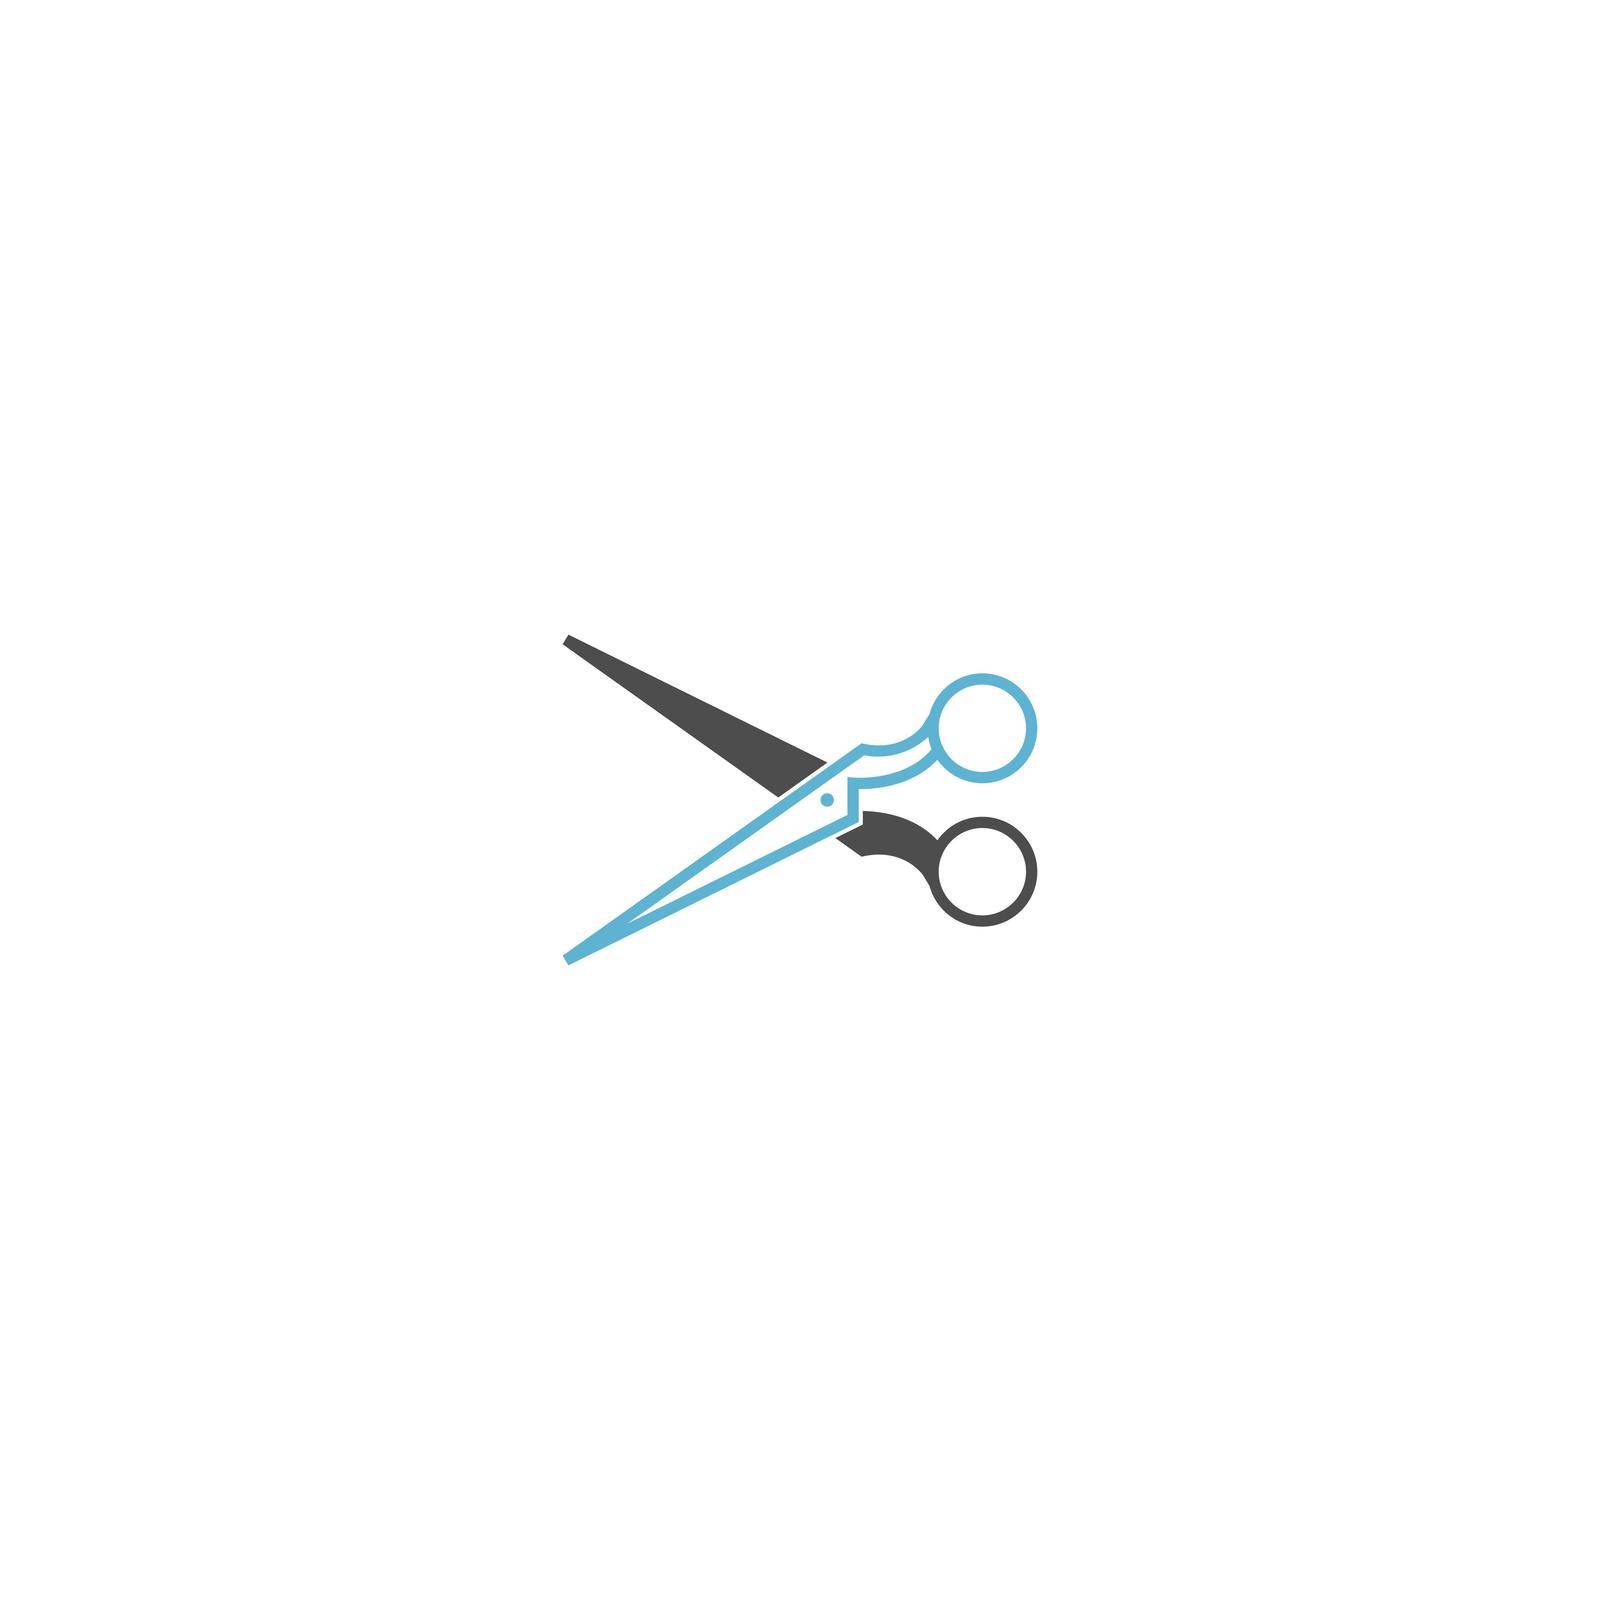 Scissor icon ilustration template vector